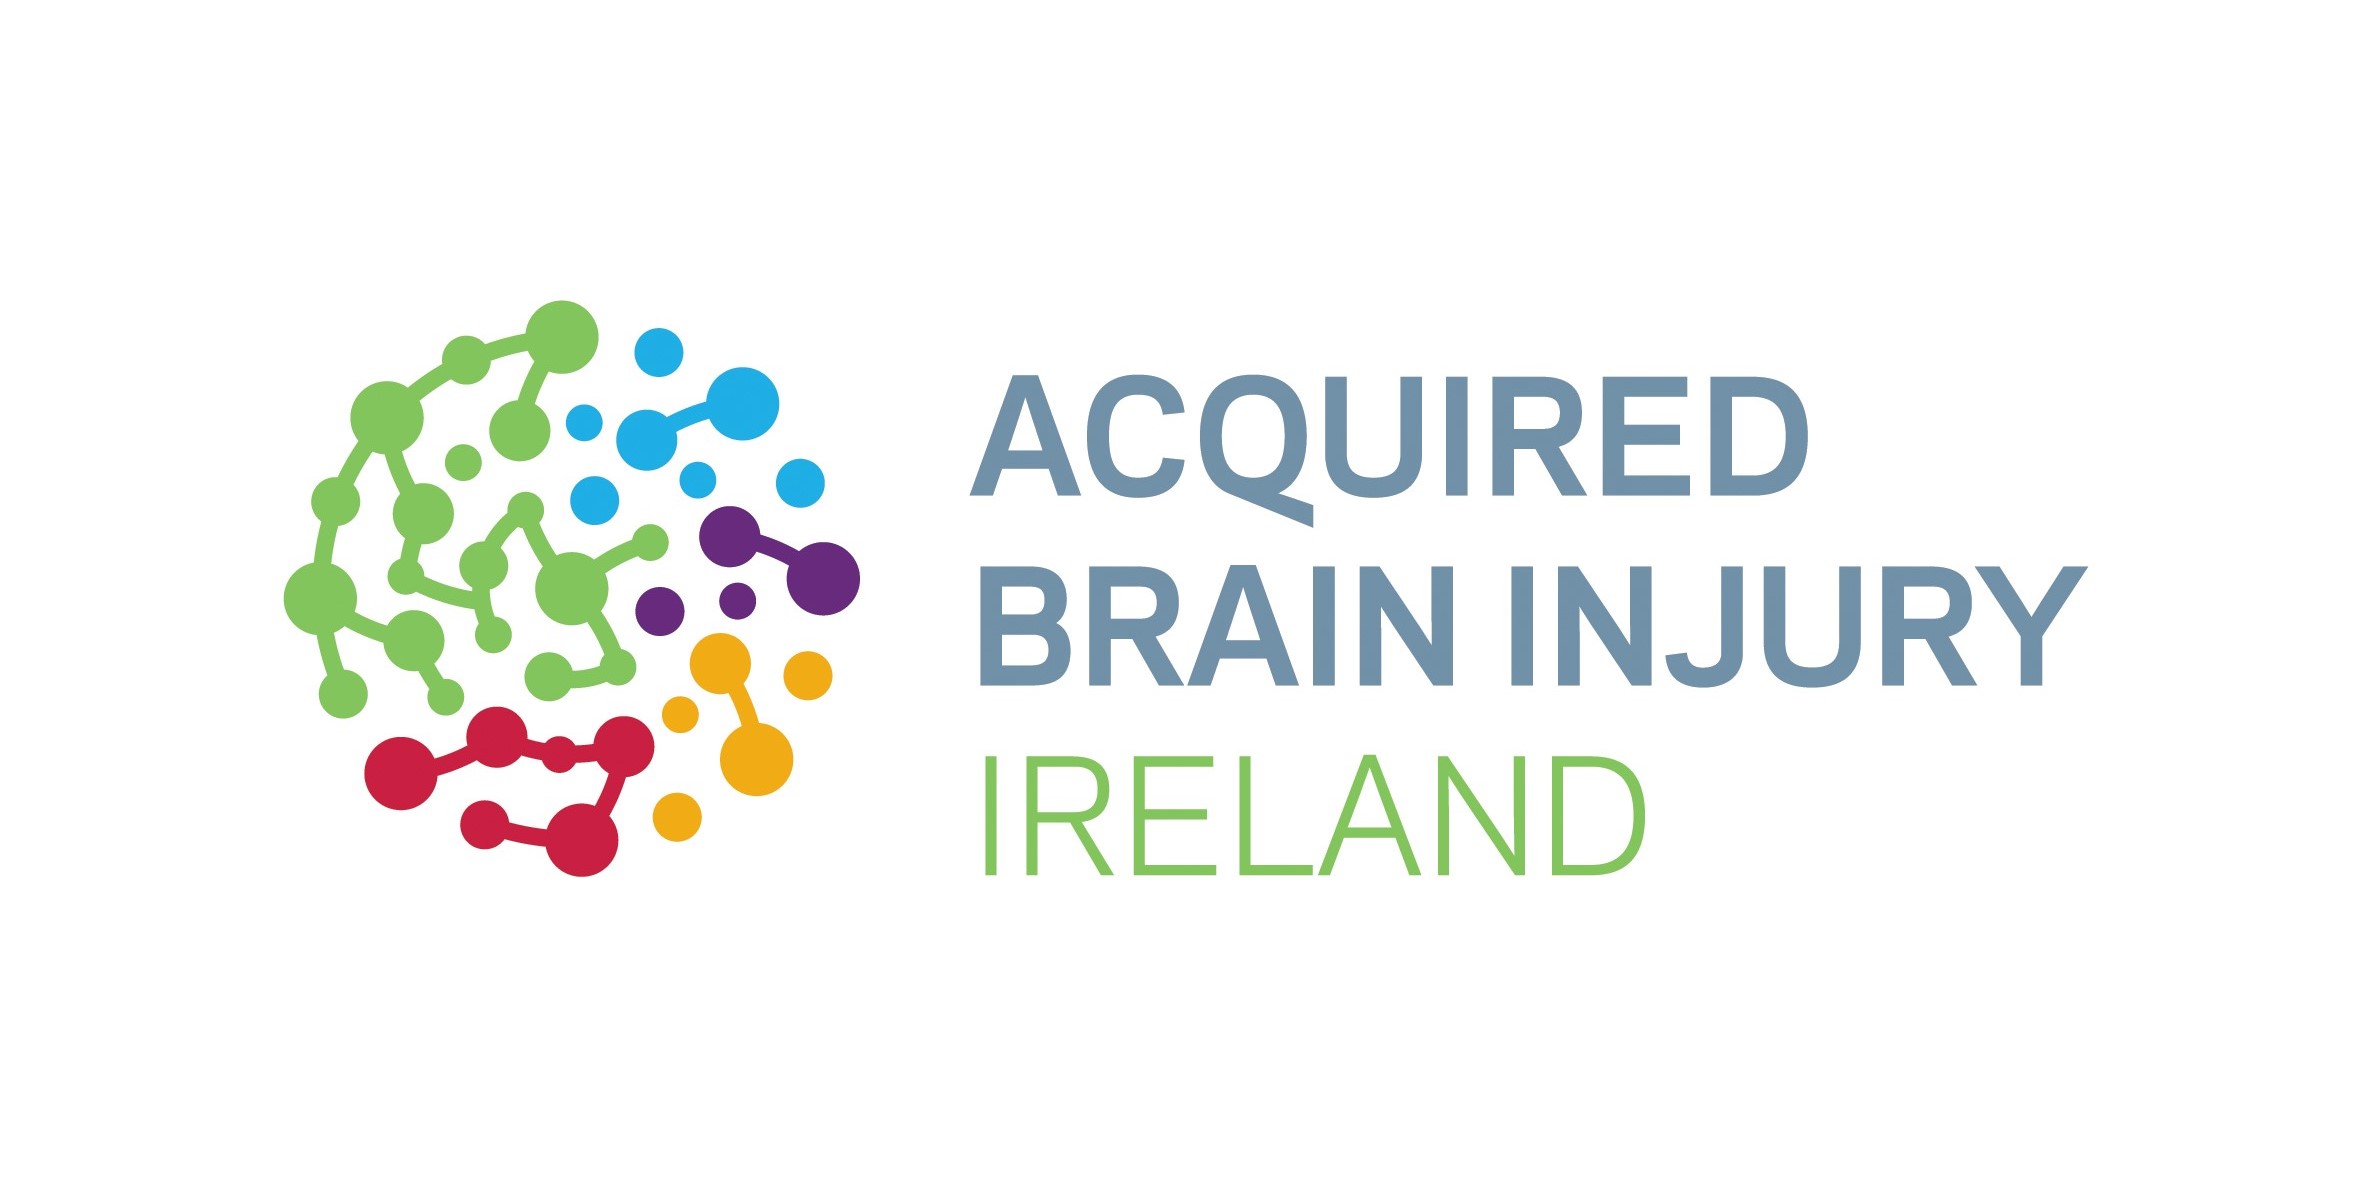 Acquired Brain Injury Ireland logo